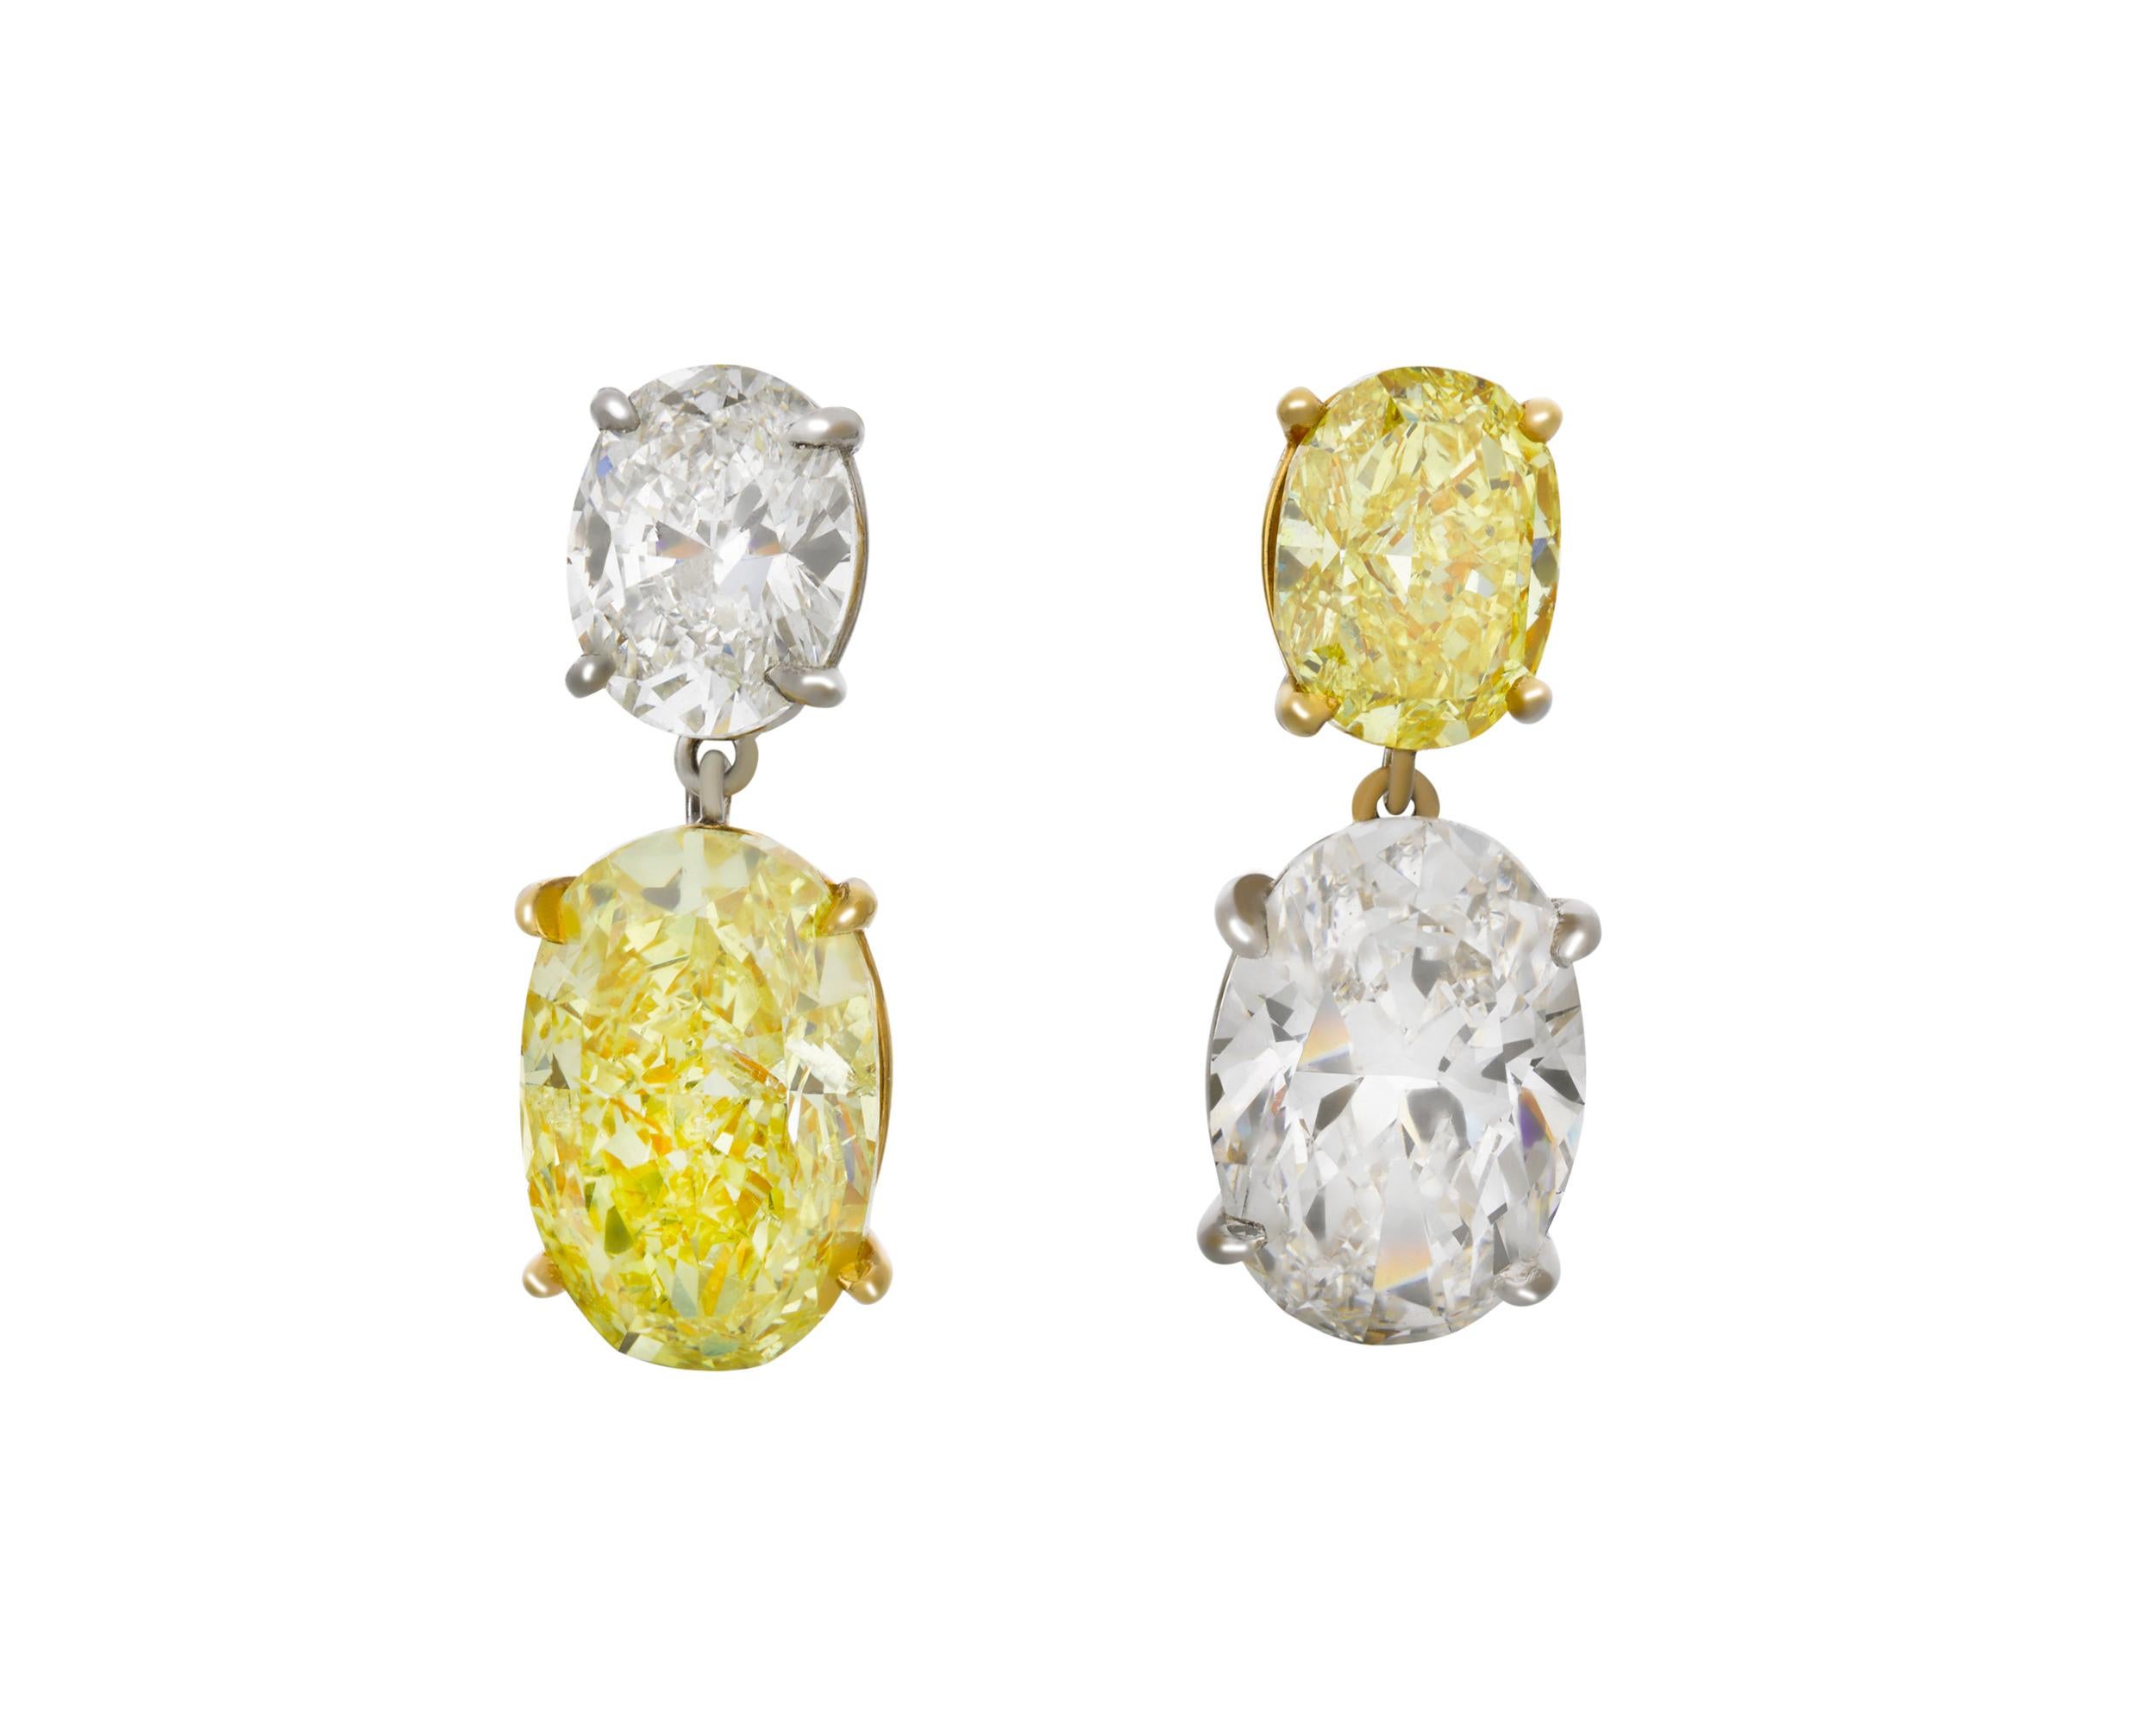 Deux diamants jaunes fantaisie naturels totalisant 3,62 carats sont sertis dans ces boucles d'oreilles éblouissantes. Les pierres précieuses, qui pèsent 2,54 et 1,08 carats, sont certifiées entièrement naturelles par le GIA (Gemological Institute of